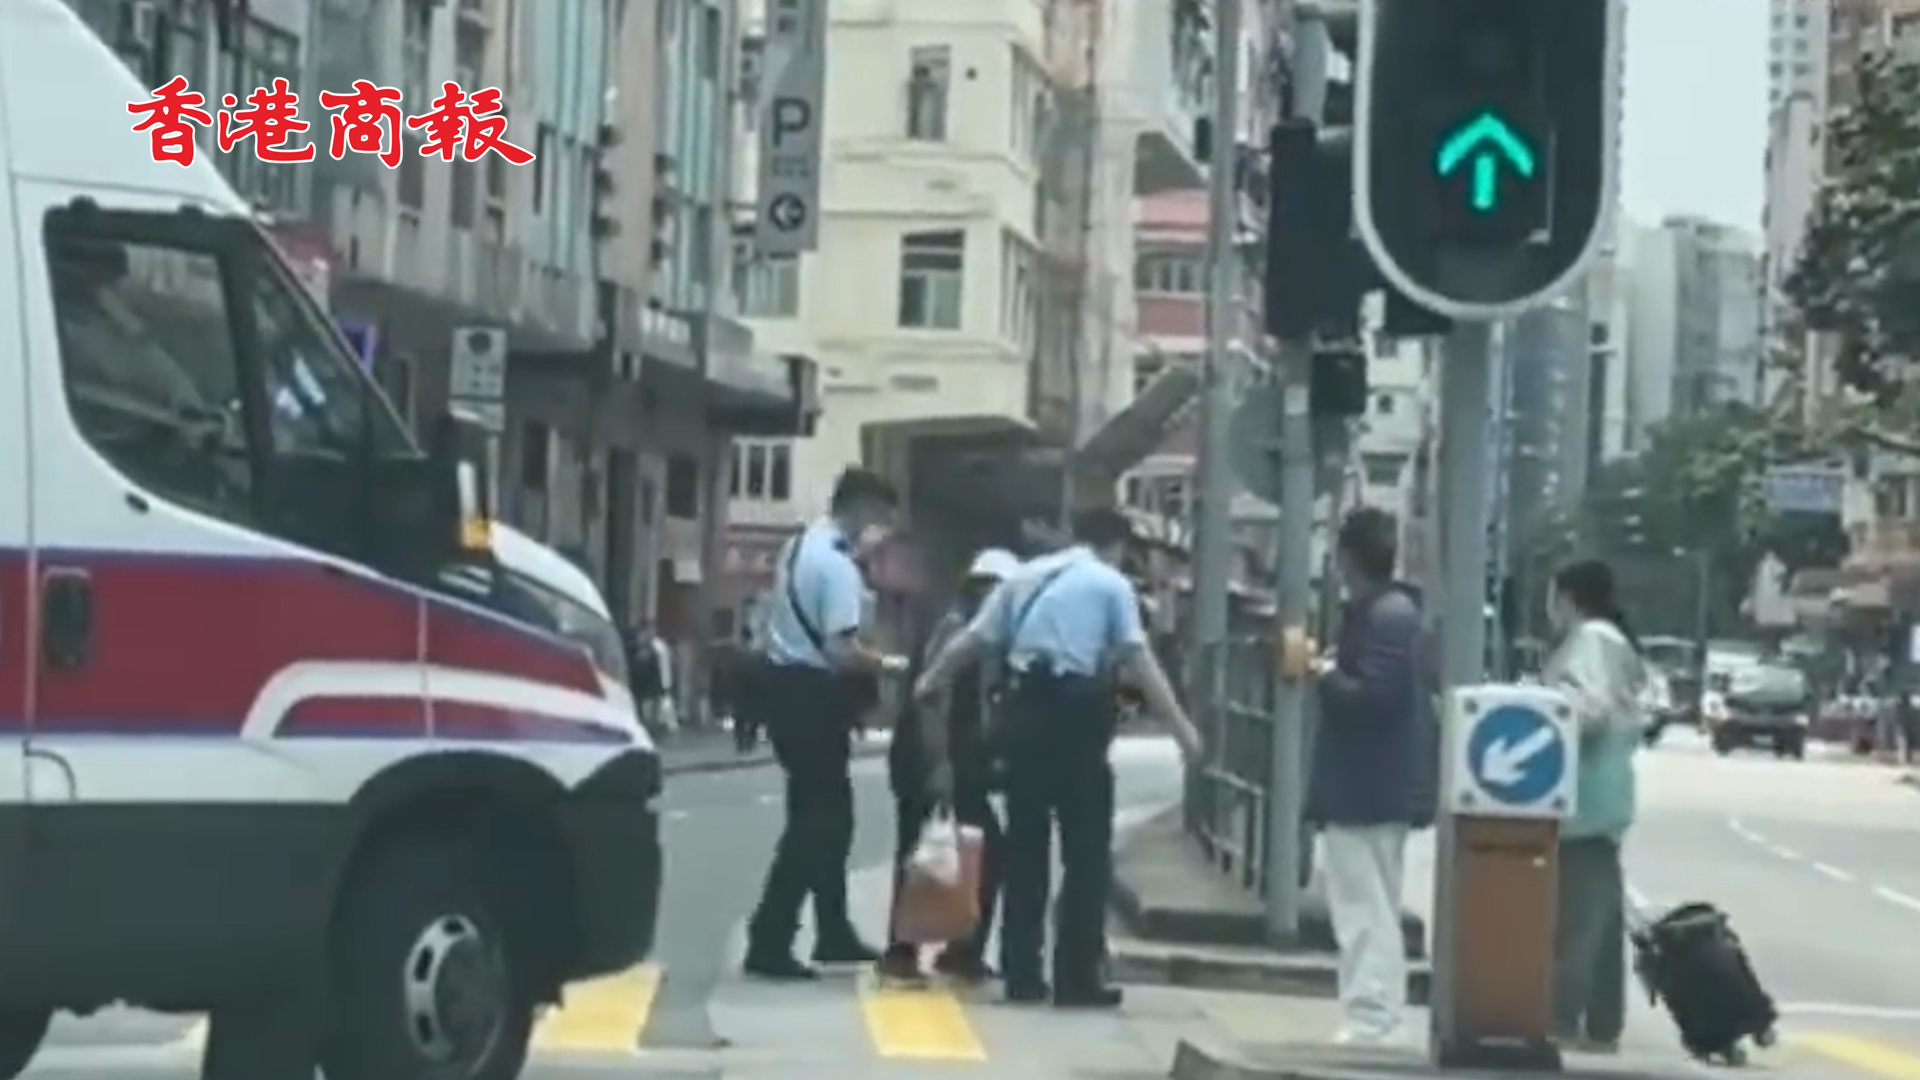 有片丨香港警察暖心下車攙扶老人過馬路 老人一度站在路上 險象環生